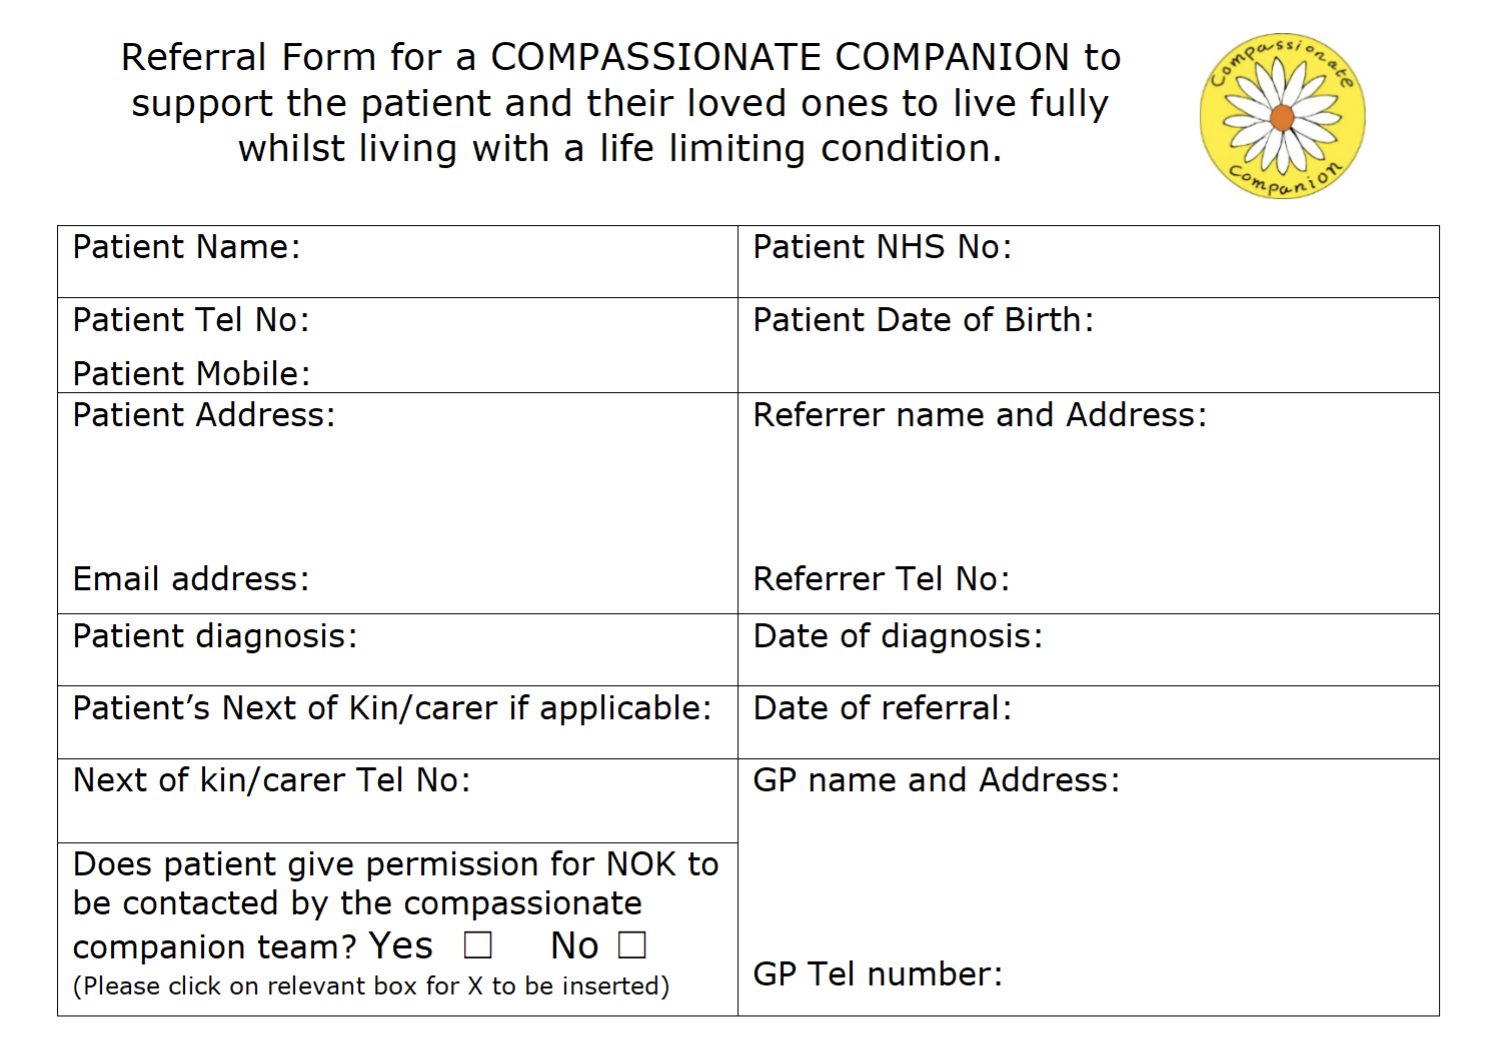 cc referral form